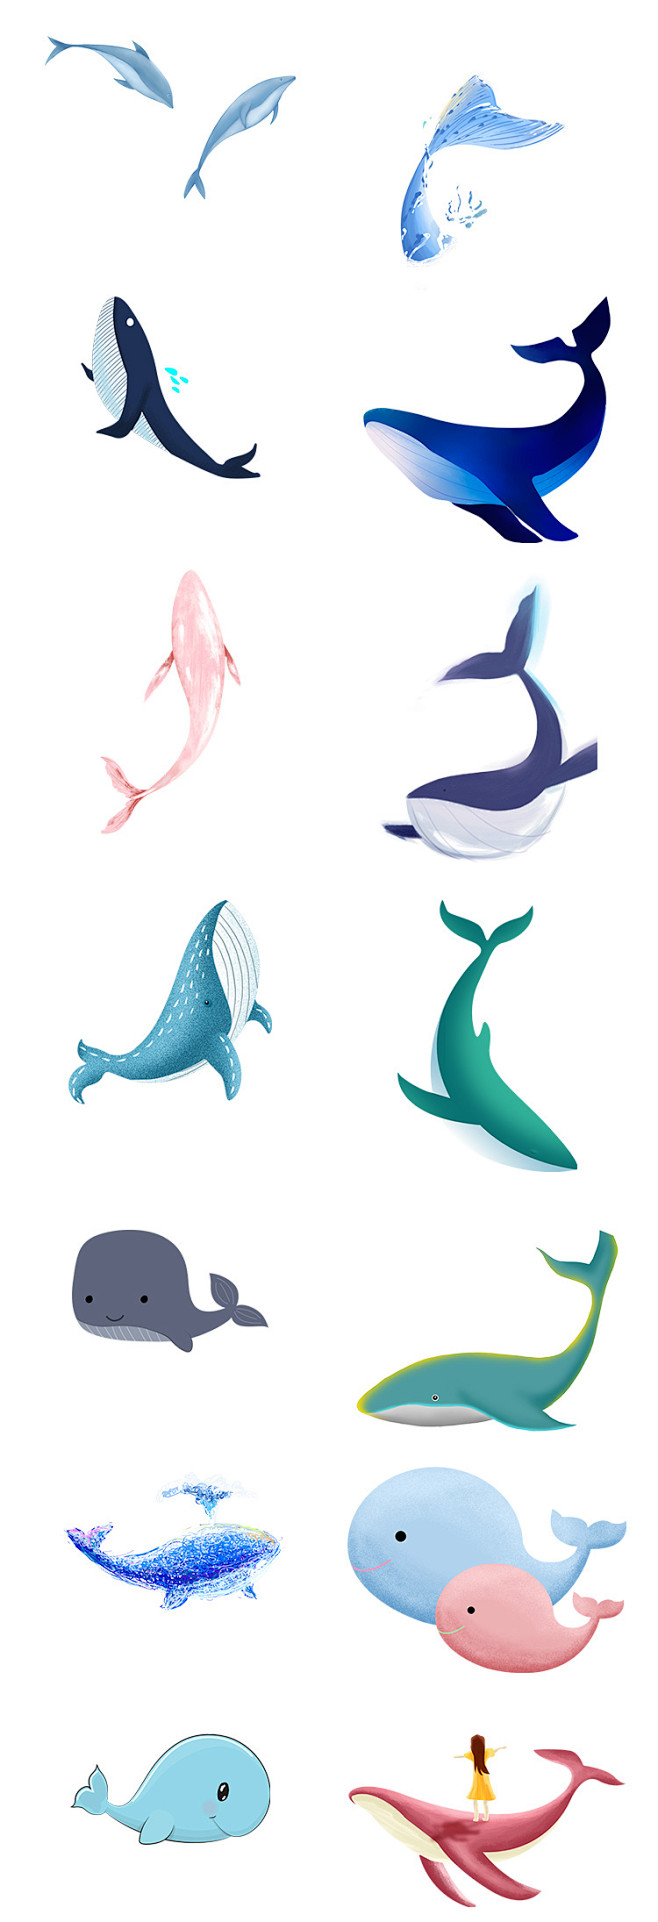 唯美手绘鲸鱼大海主题海洋馆治愈插画风格透明元素png设计素材淘宝网